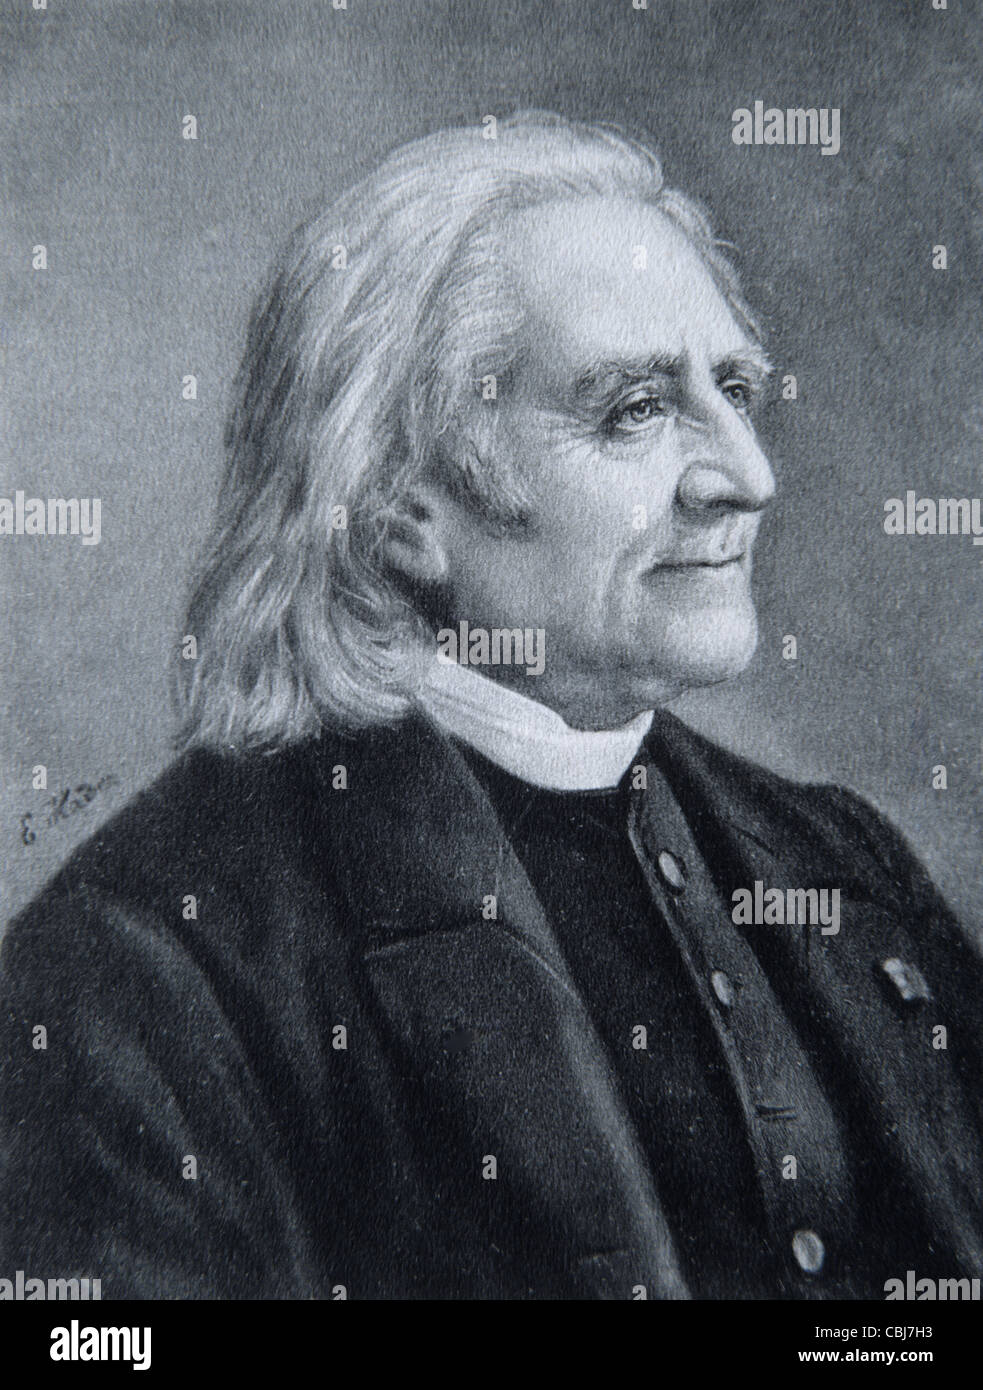 Portrait de Franz Liszt (1811-86), pianiste et compositeur né en Hongrie. Illustration ancienne ou gravure Banque D'Images